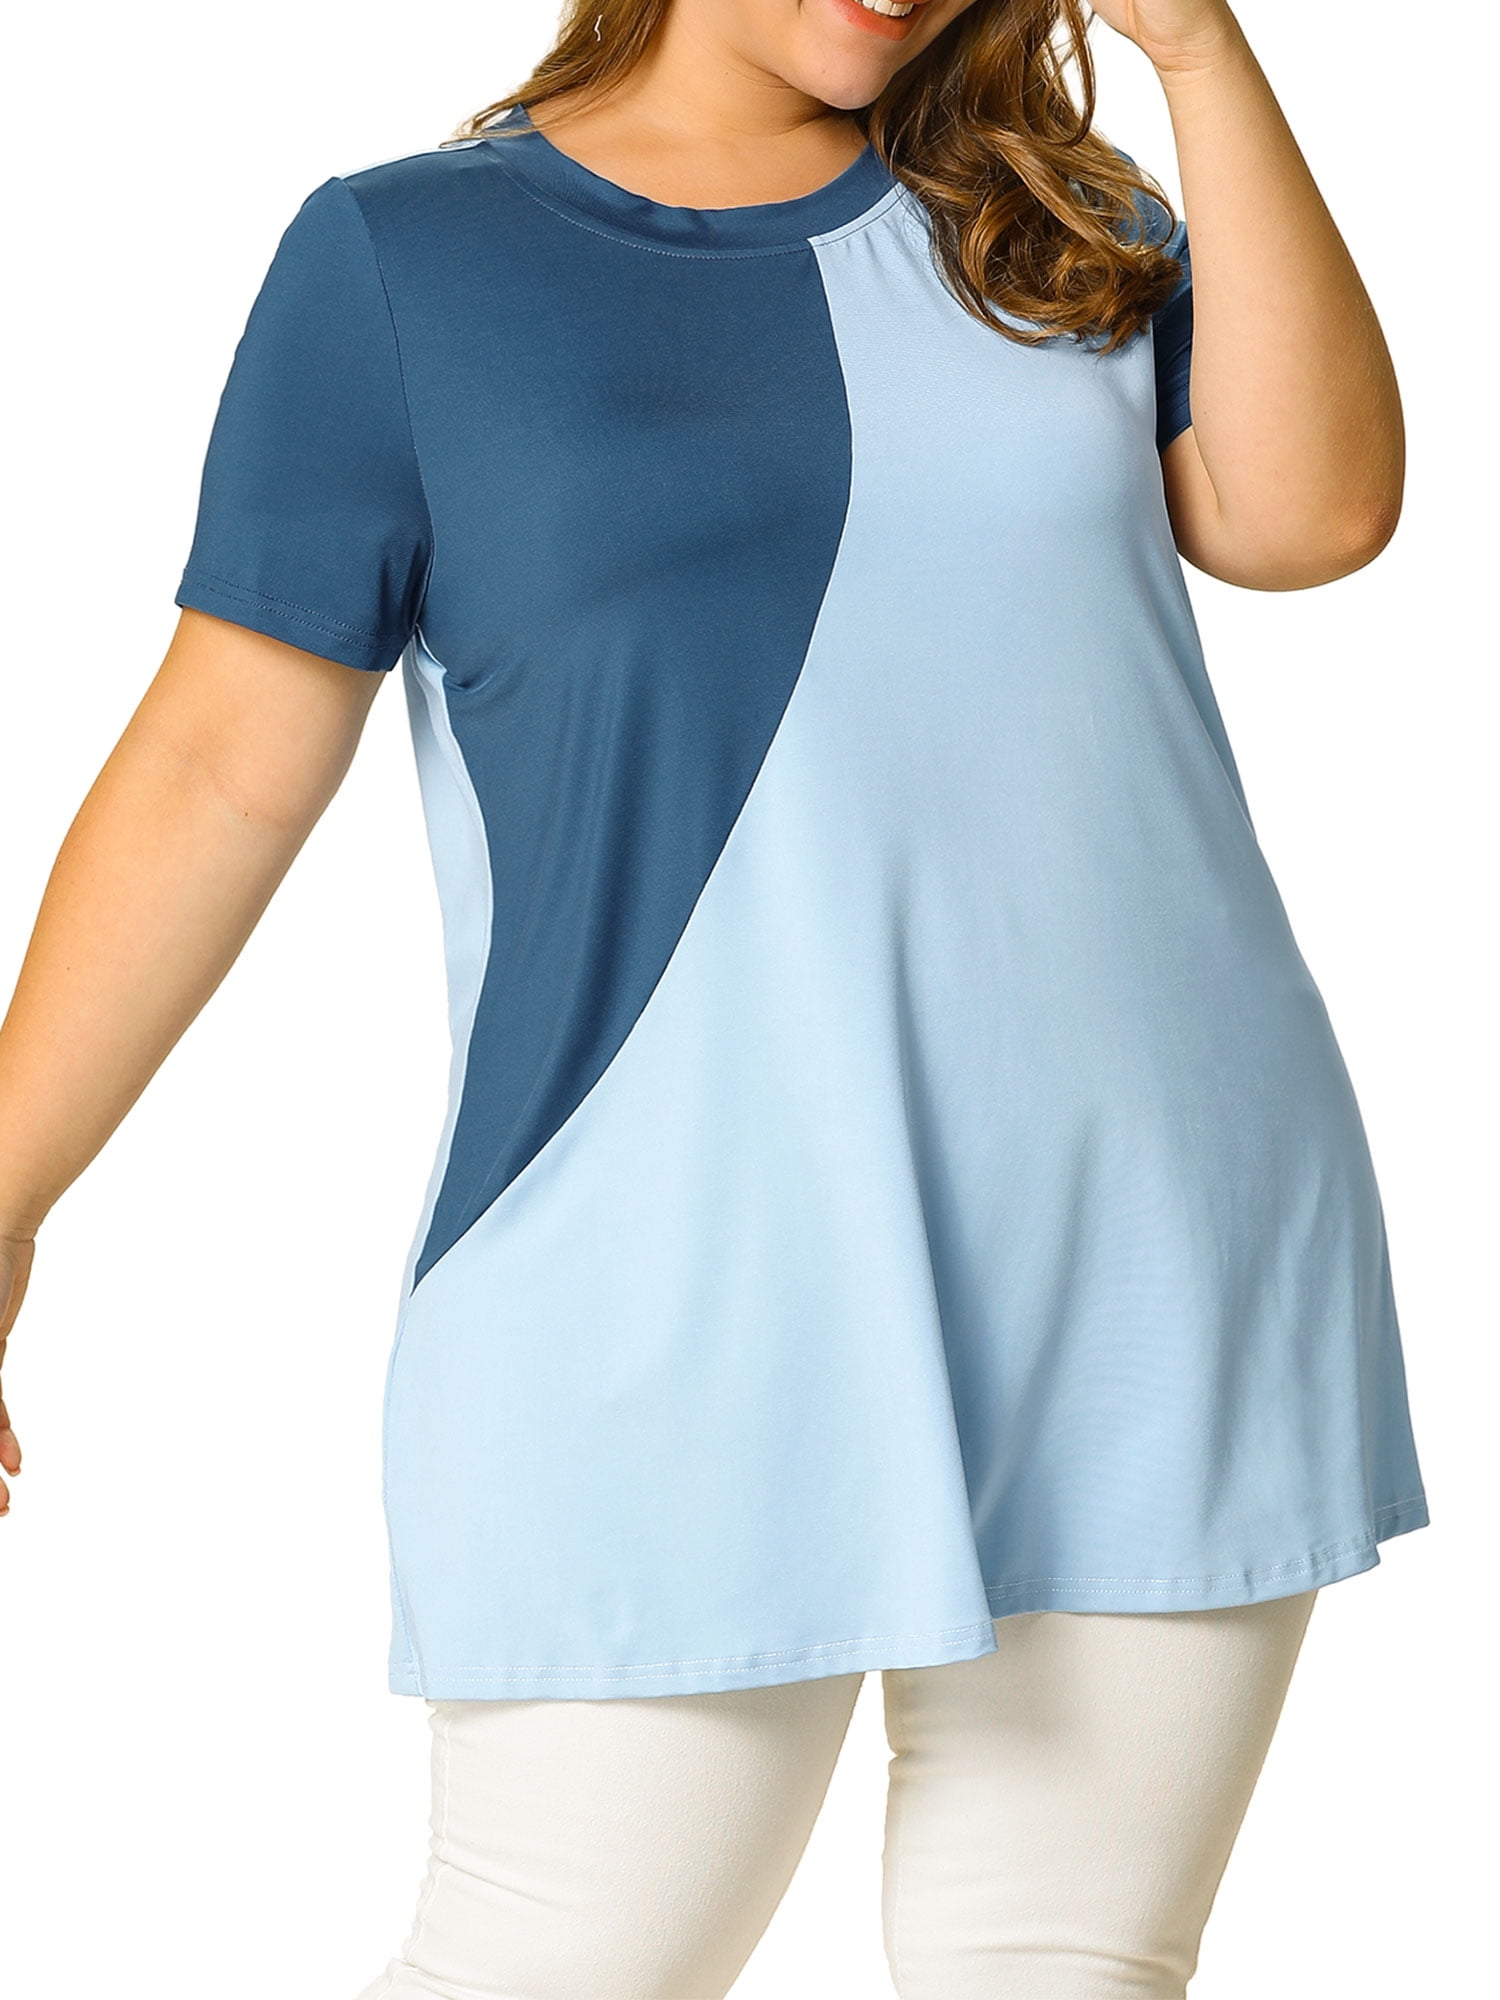 Women's Plus Size Summer Color Block Blouse Short Tunic Top - Walmart.com